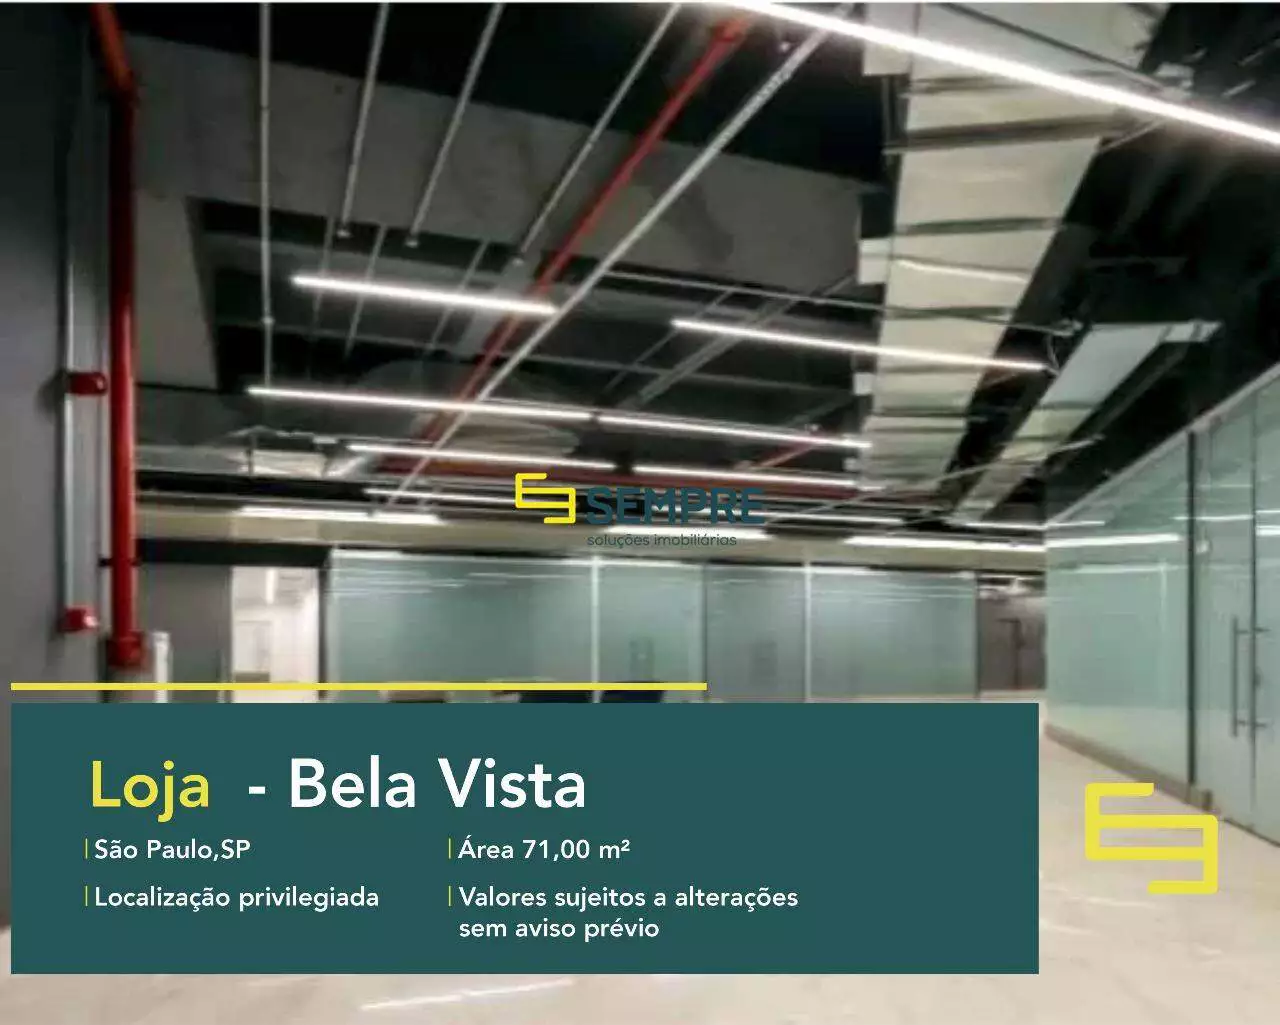 Loja para alugar no Bela Vista em São Paulo - Martiniano Center, excelente localização. O estabelecimento comercial conta com área de 71 m².